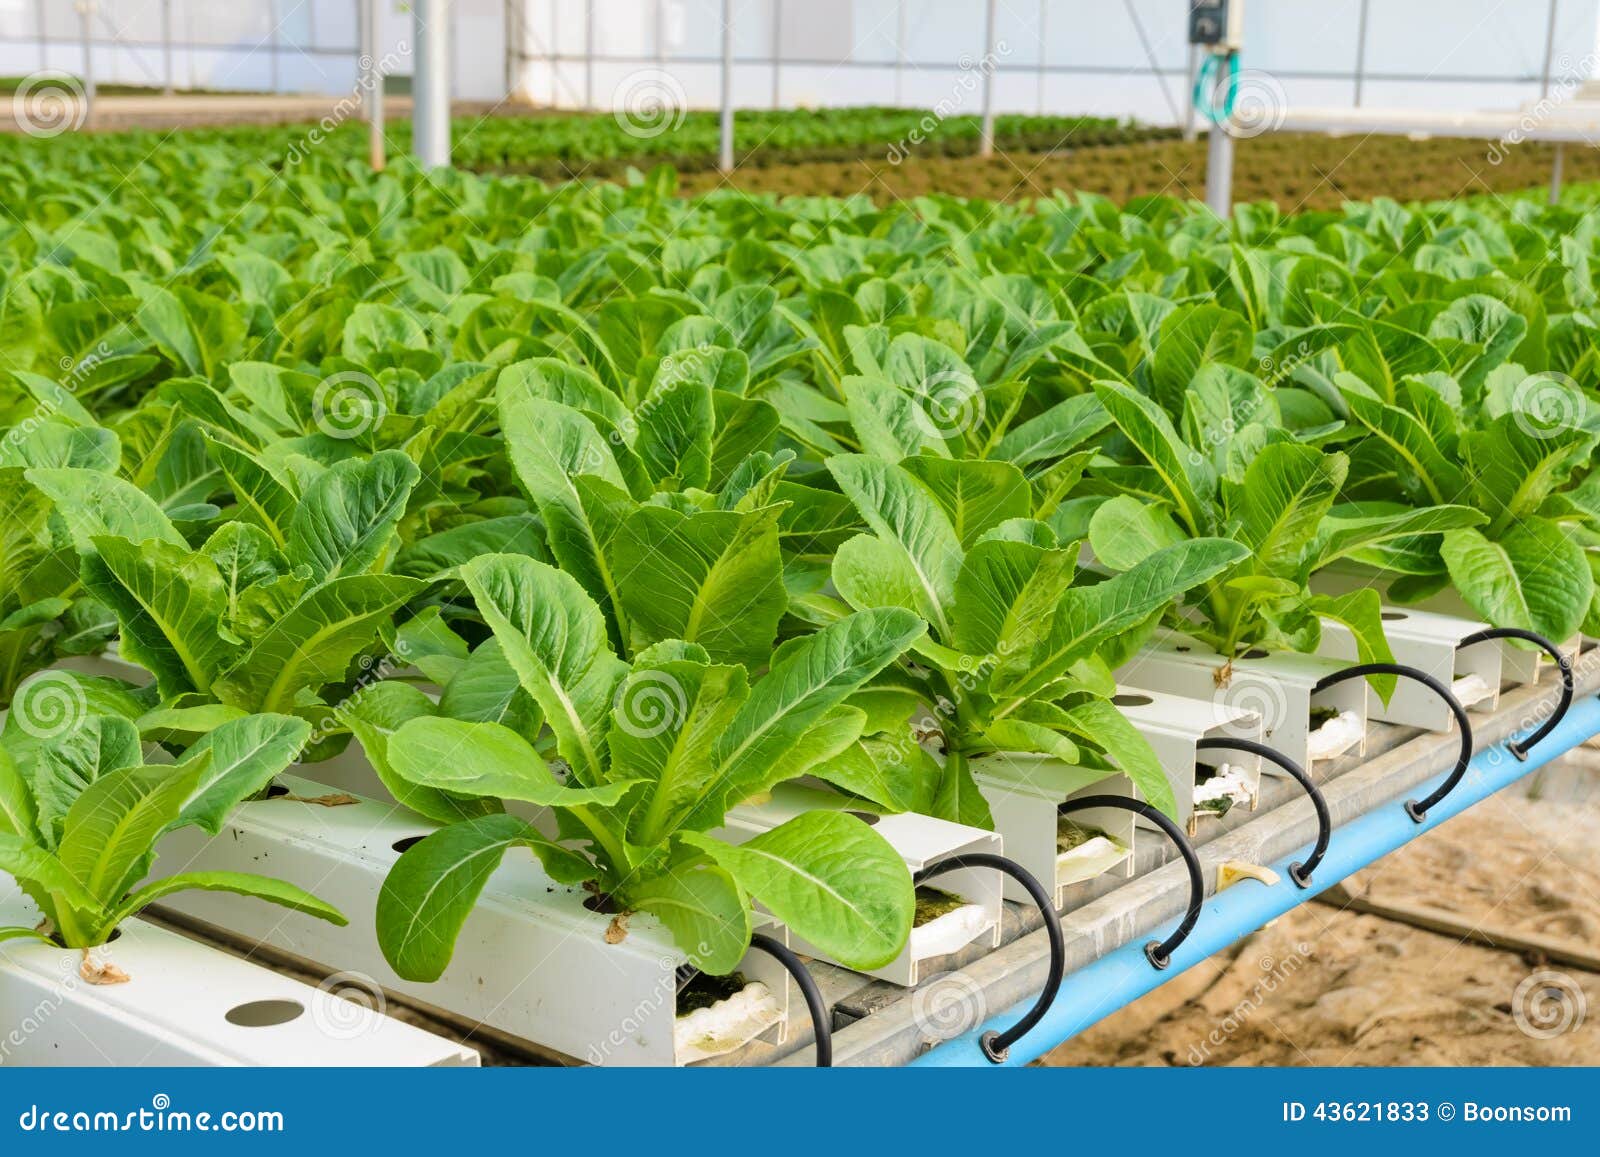 Romaine Lettuce Hydroponic Plantation Stock Photo - Image: 43621833